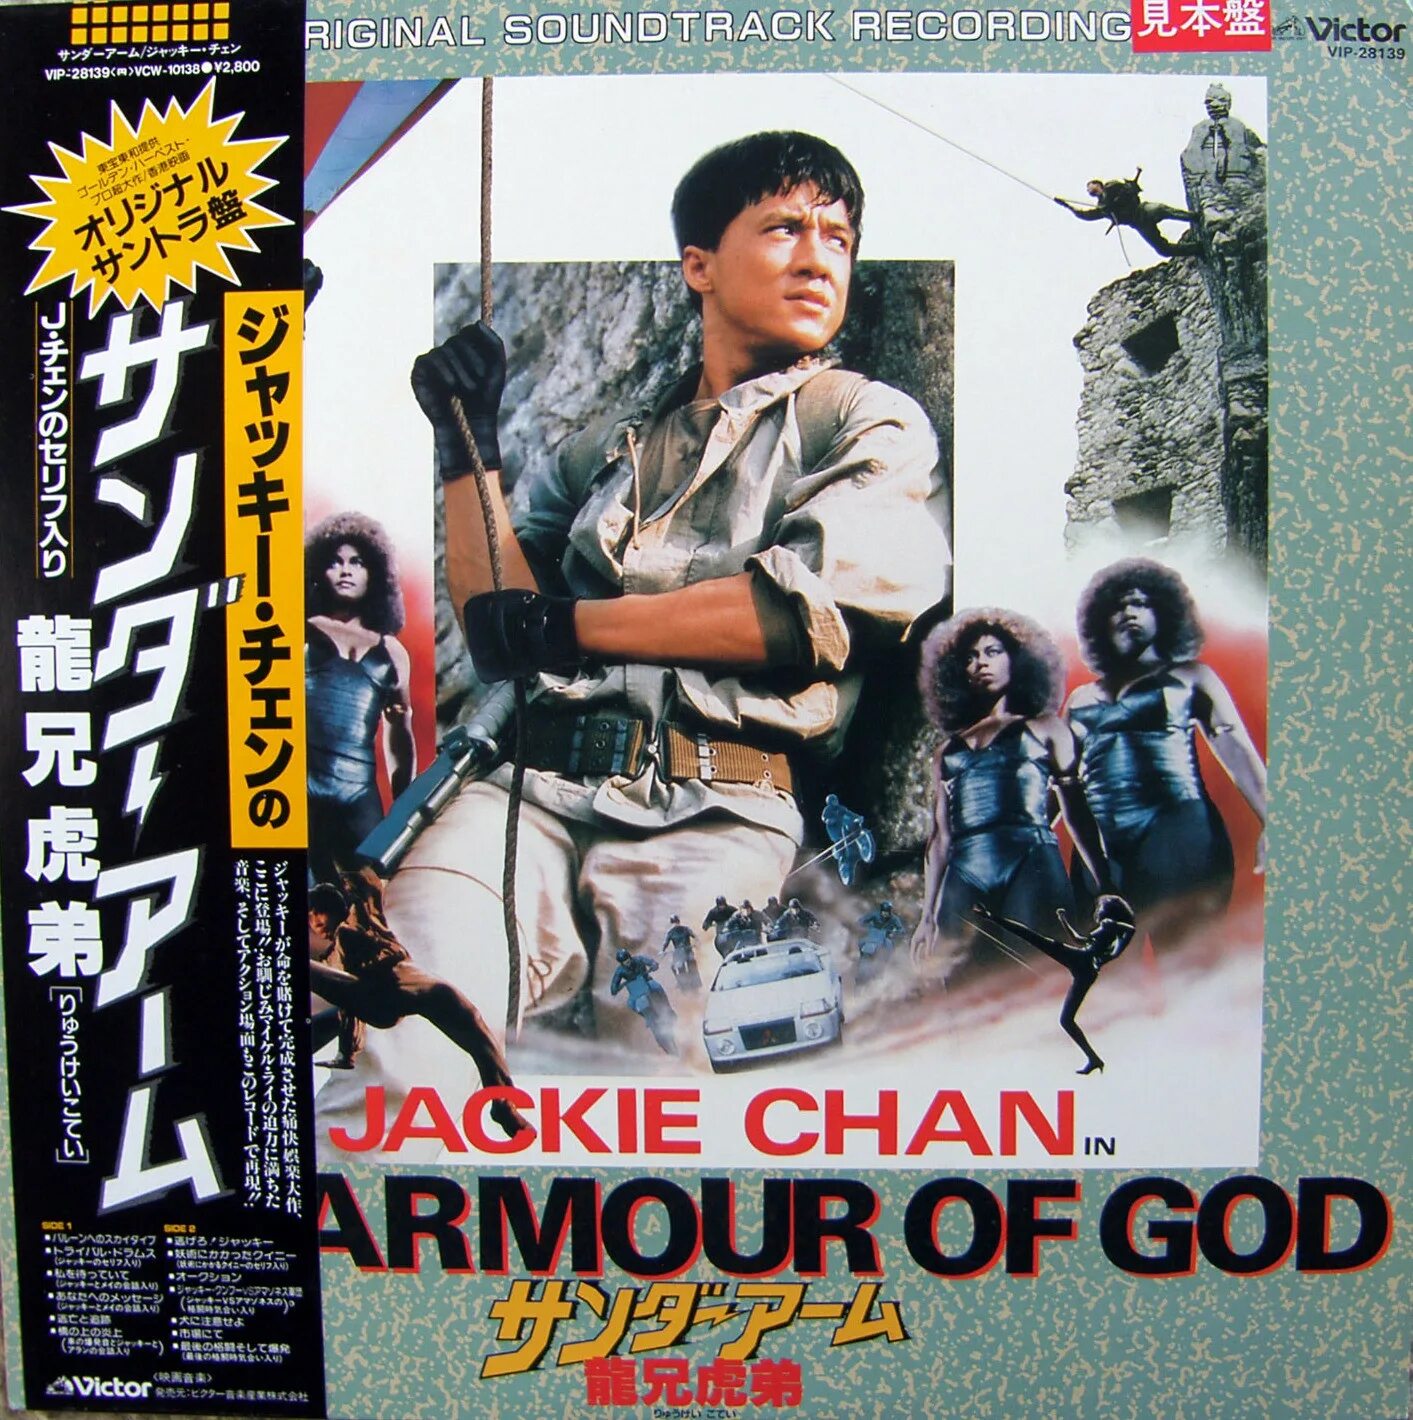 Джеки чан песни доспехи бога. Armour of God 1986. Джеки Чан доспехи Бога 1986. Armour of God OST. Джеки Чан доспехи Бога.